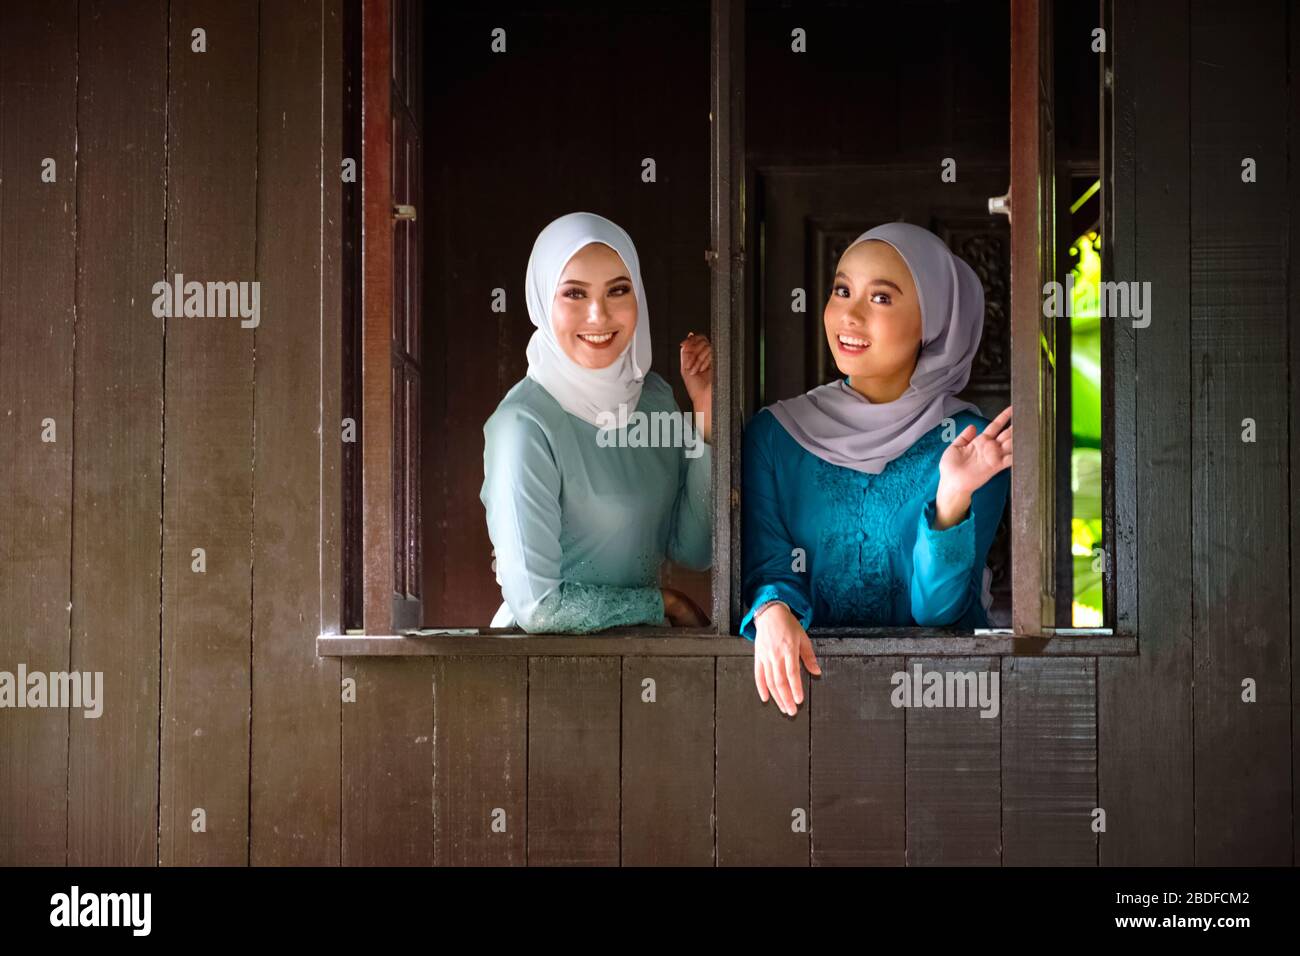 Ritratto di donne malesi musulmane che indossano hijab e costume tradizionale durante le celebrazioni di Aidilfitri alla finestra di legno di una casa tradizionale malese. Foto Stock